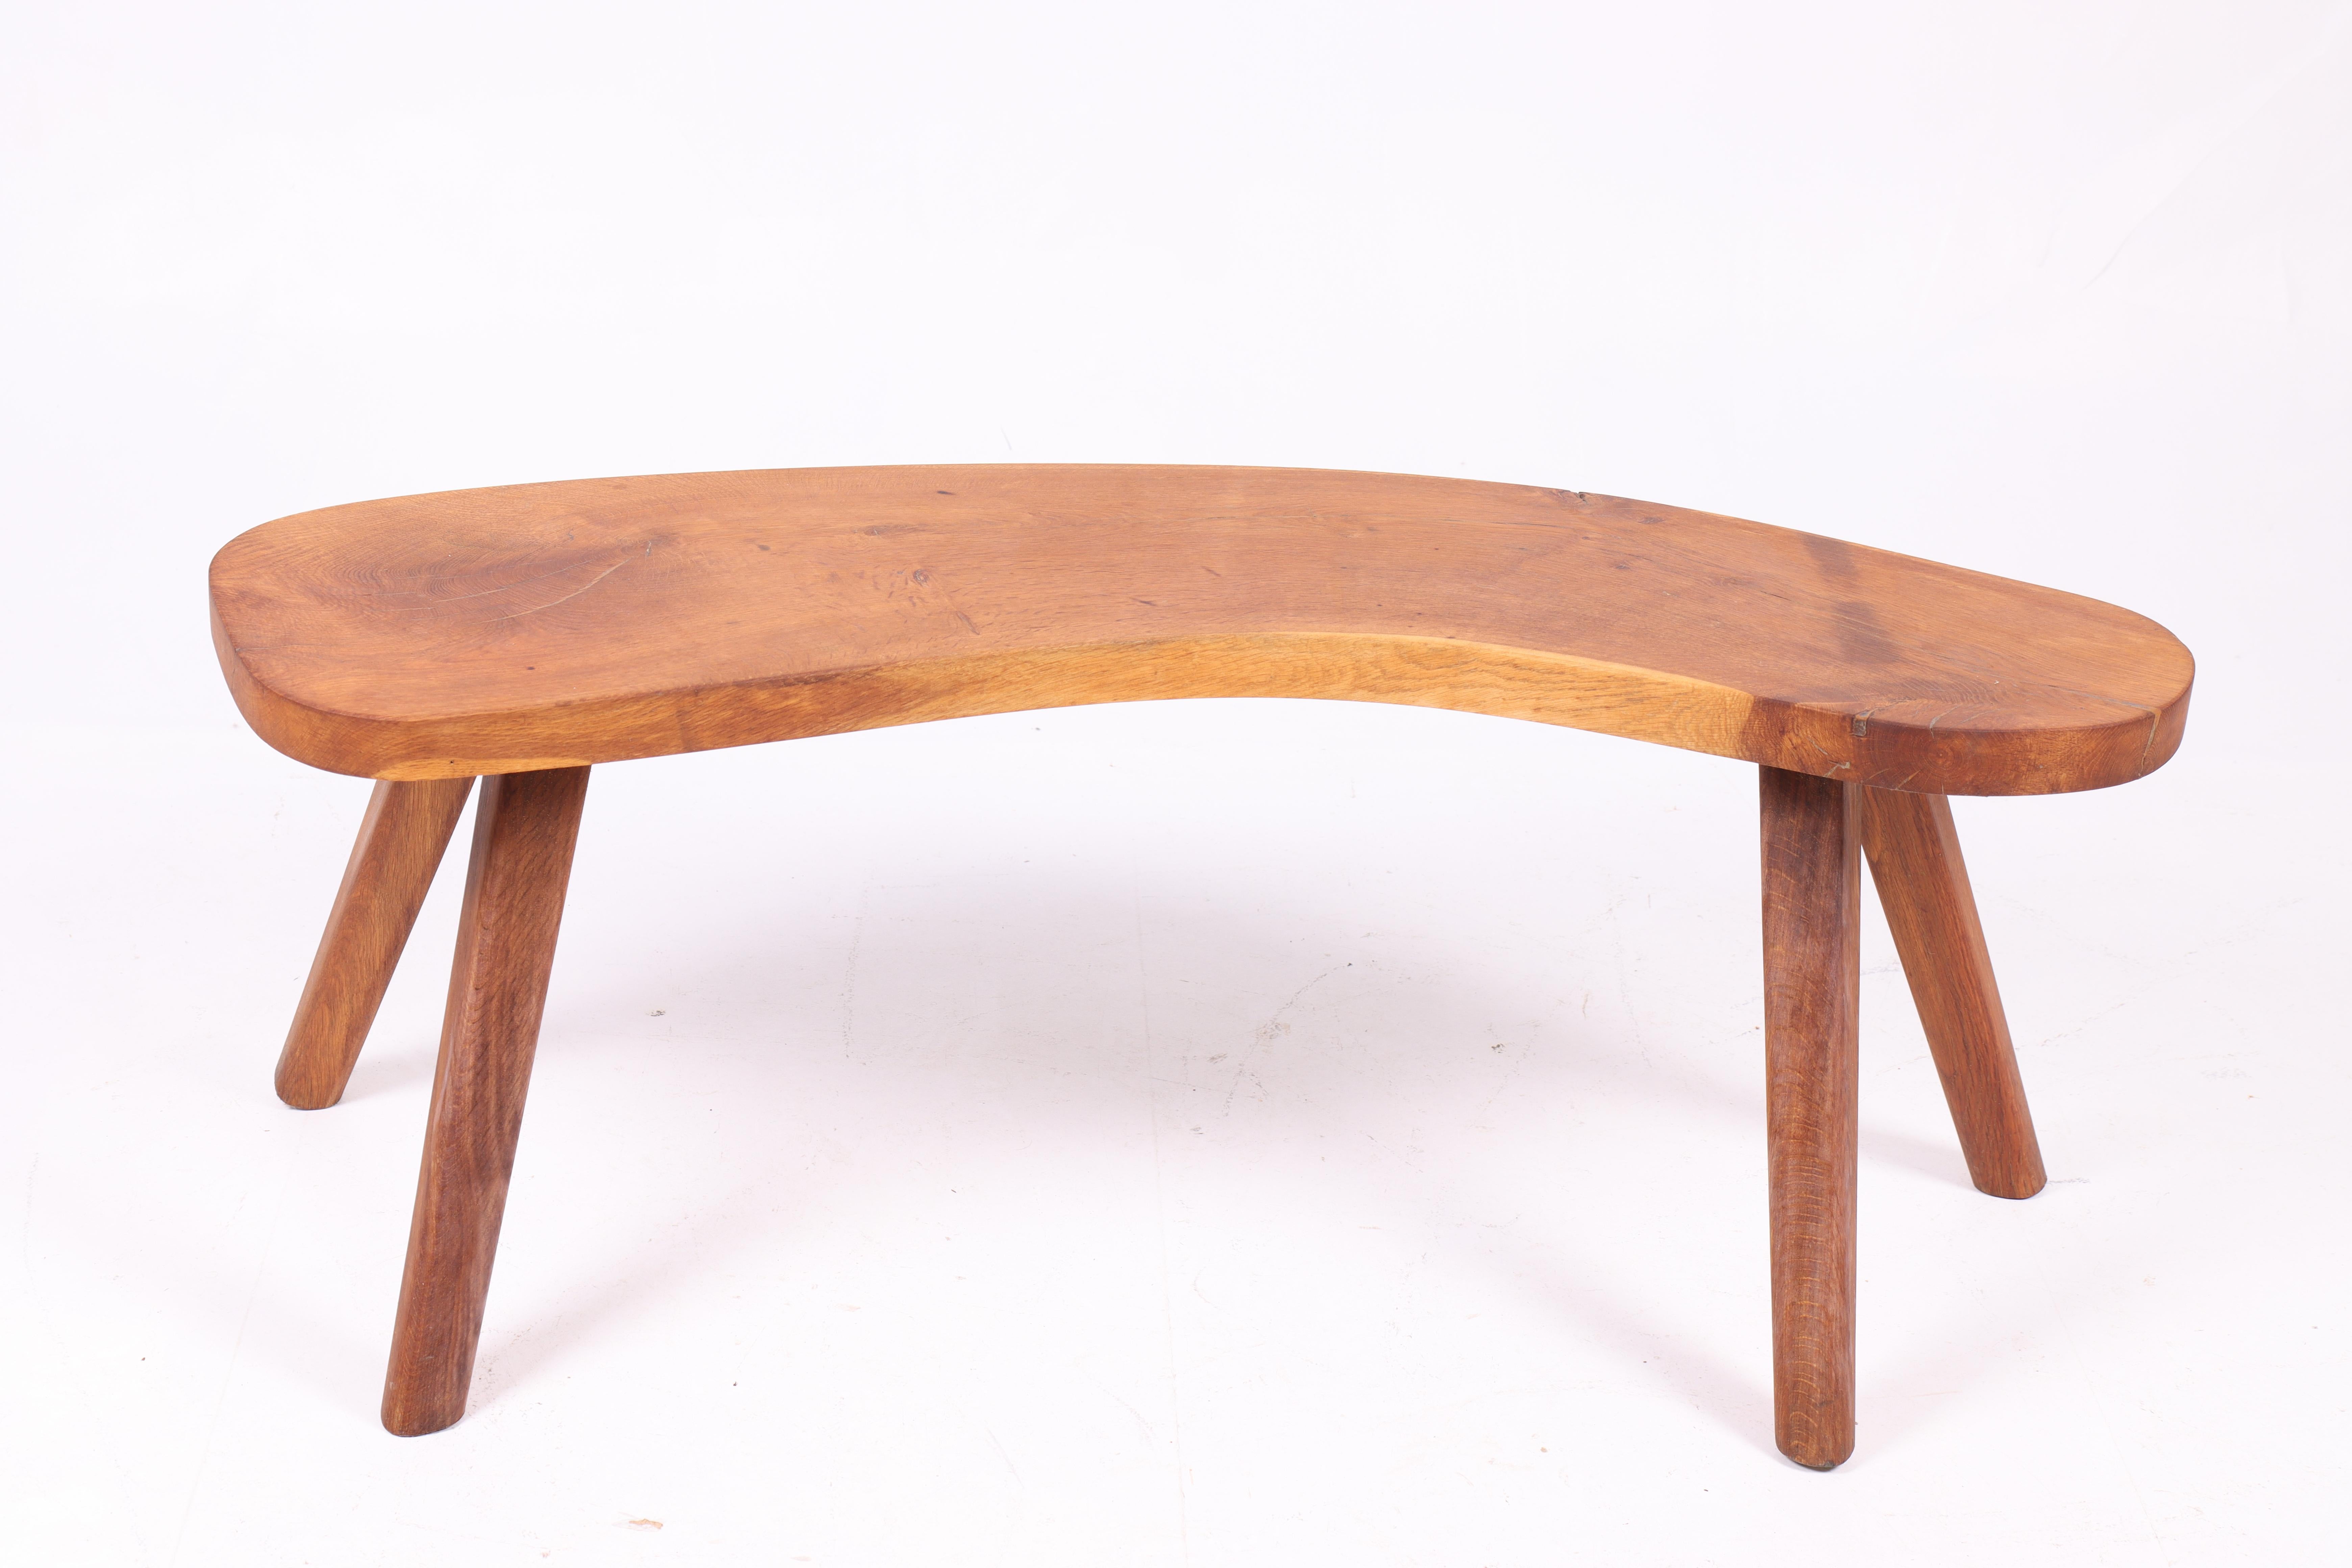 Niedriger Tisch aus massiver Eiche, entworfen und hergestellt in Dänemark. Toller Originalzustand.